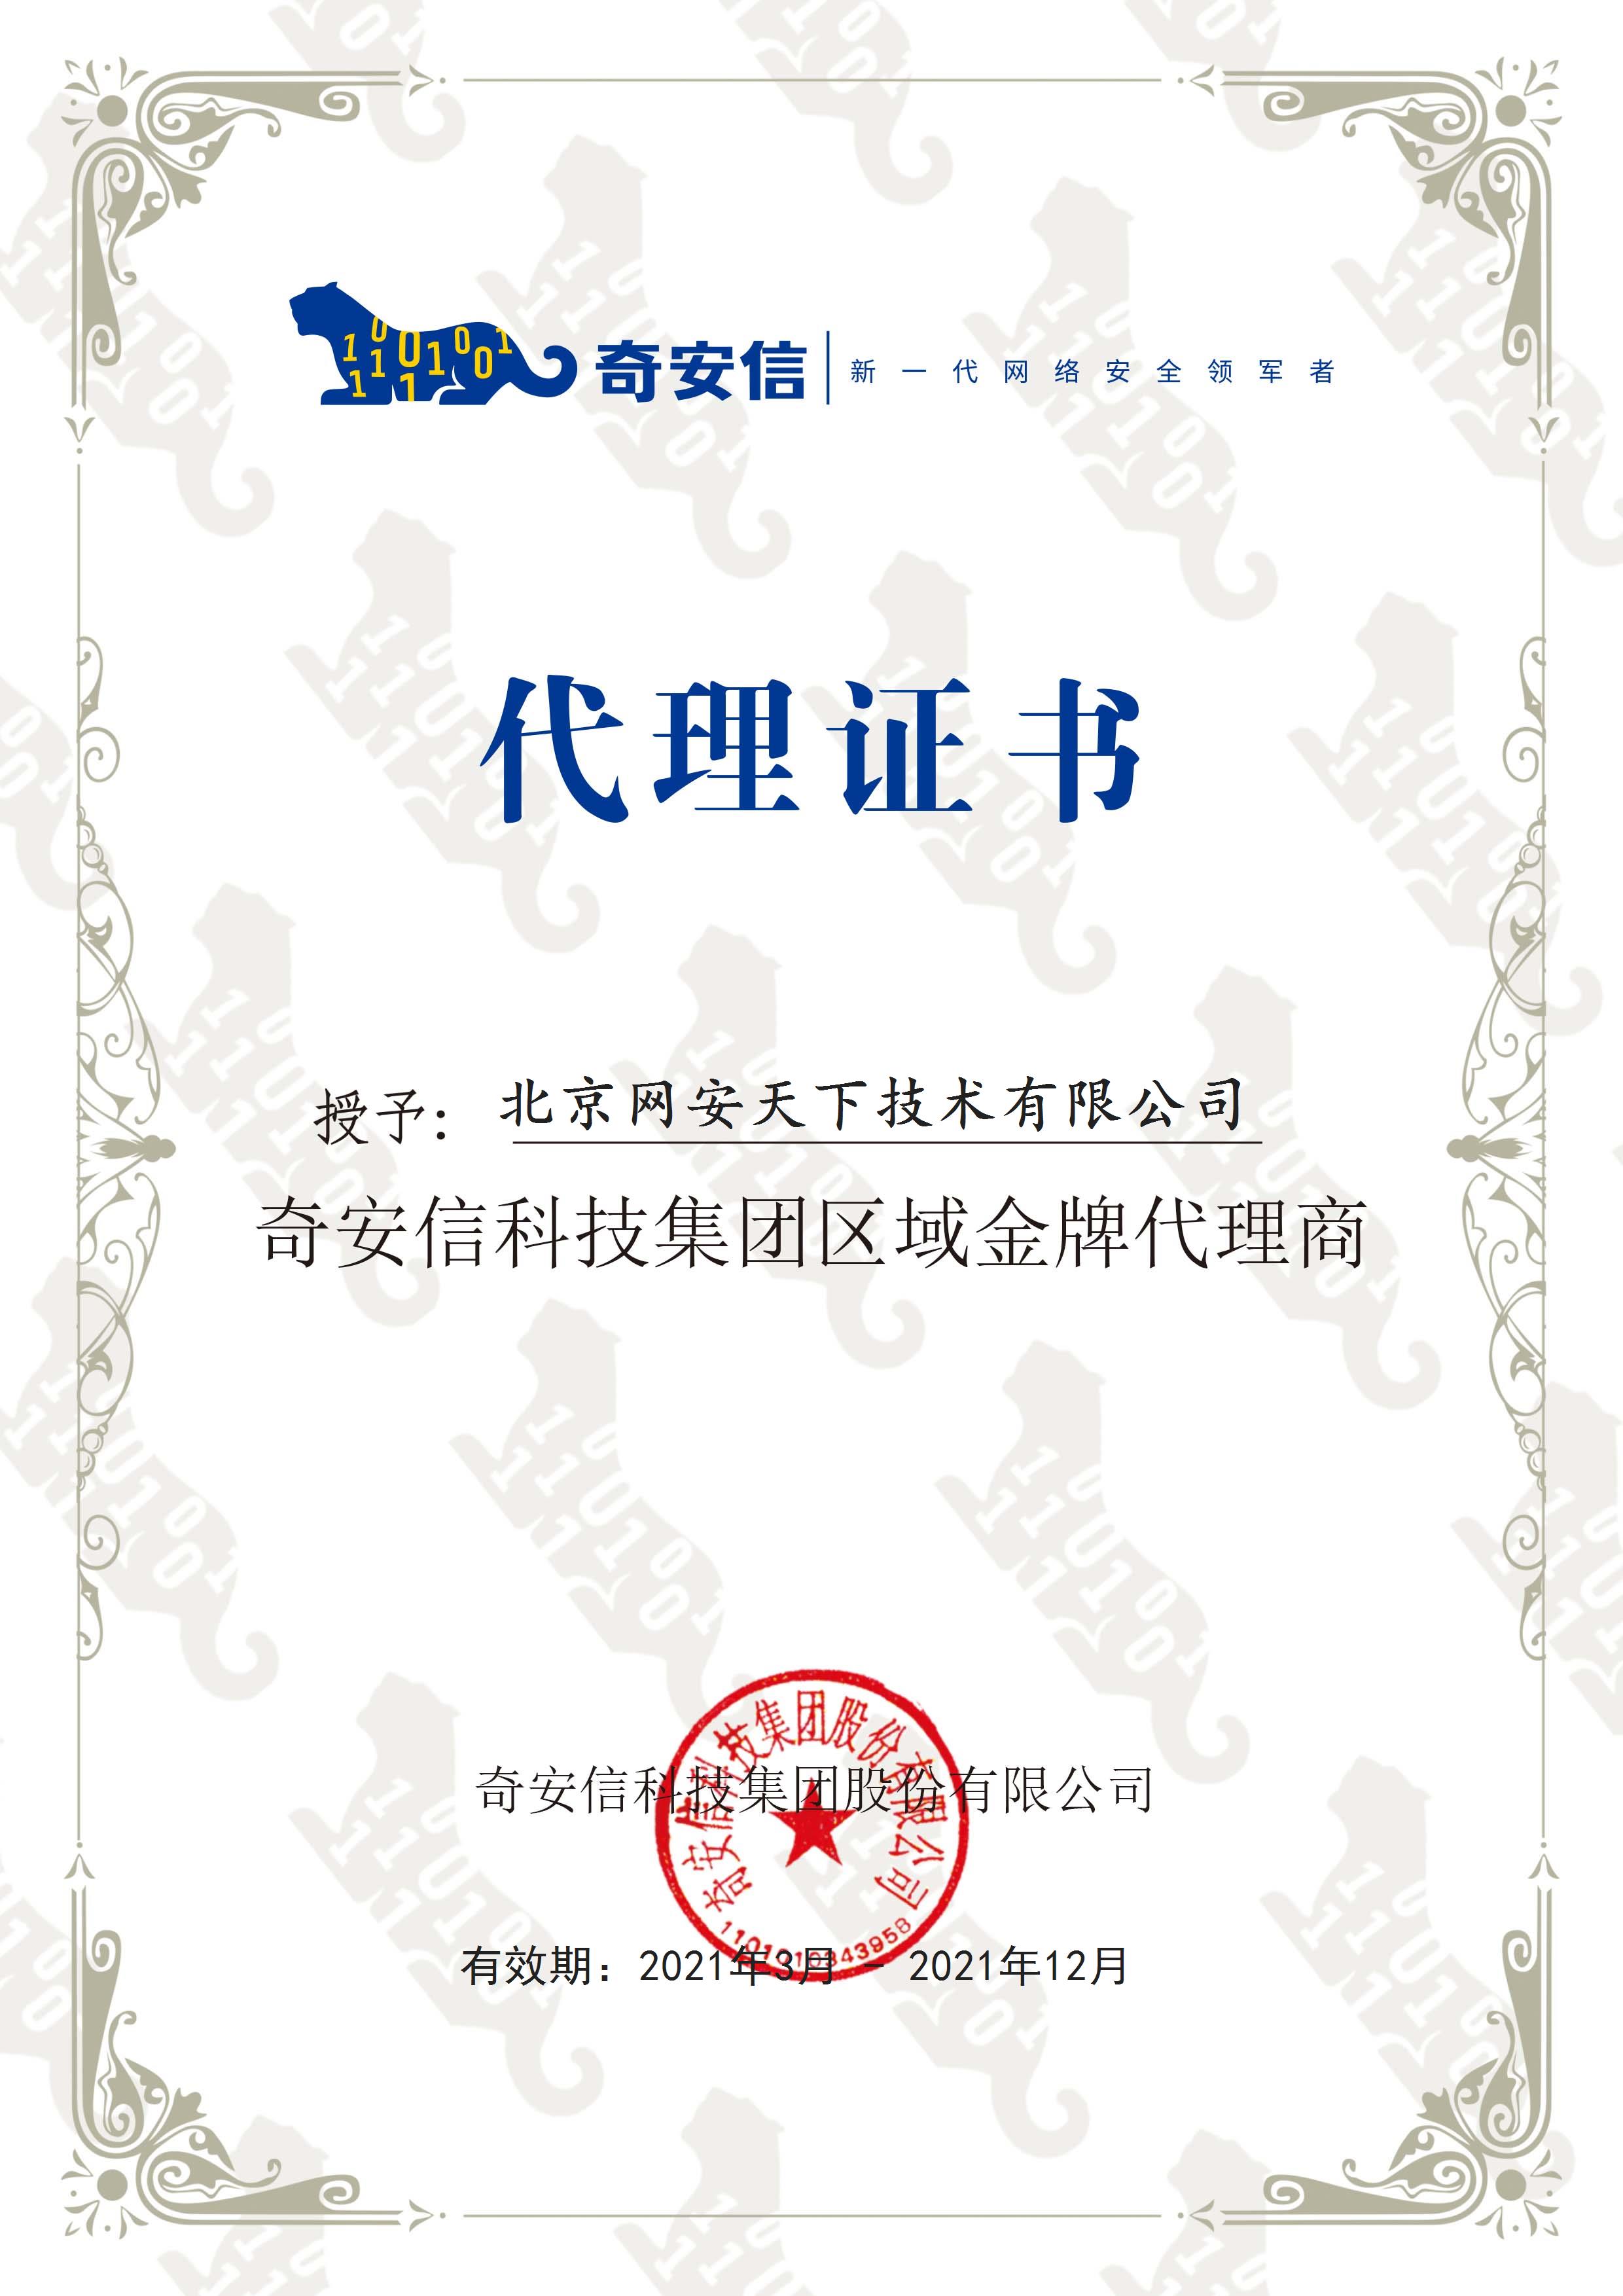 網安天下(xià)簽約2021年度奇安信科技集團代理(lǐ)商